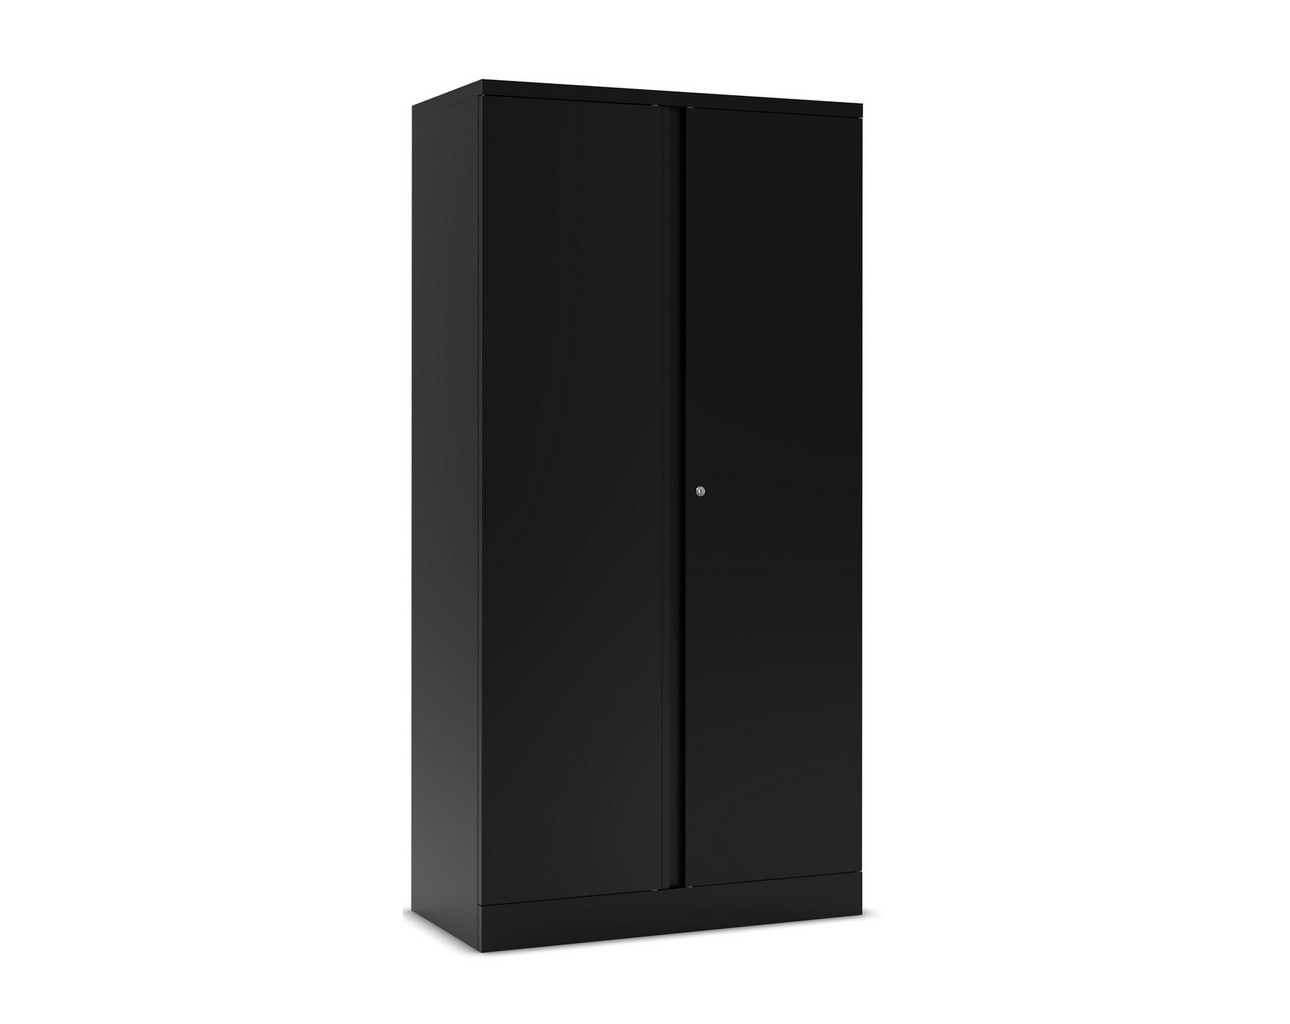 Heavy Duty Metal Storage Cabinets – 72 in Black